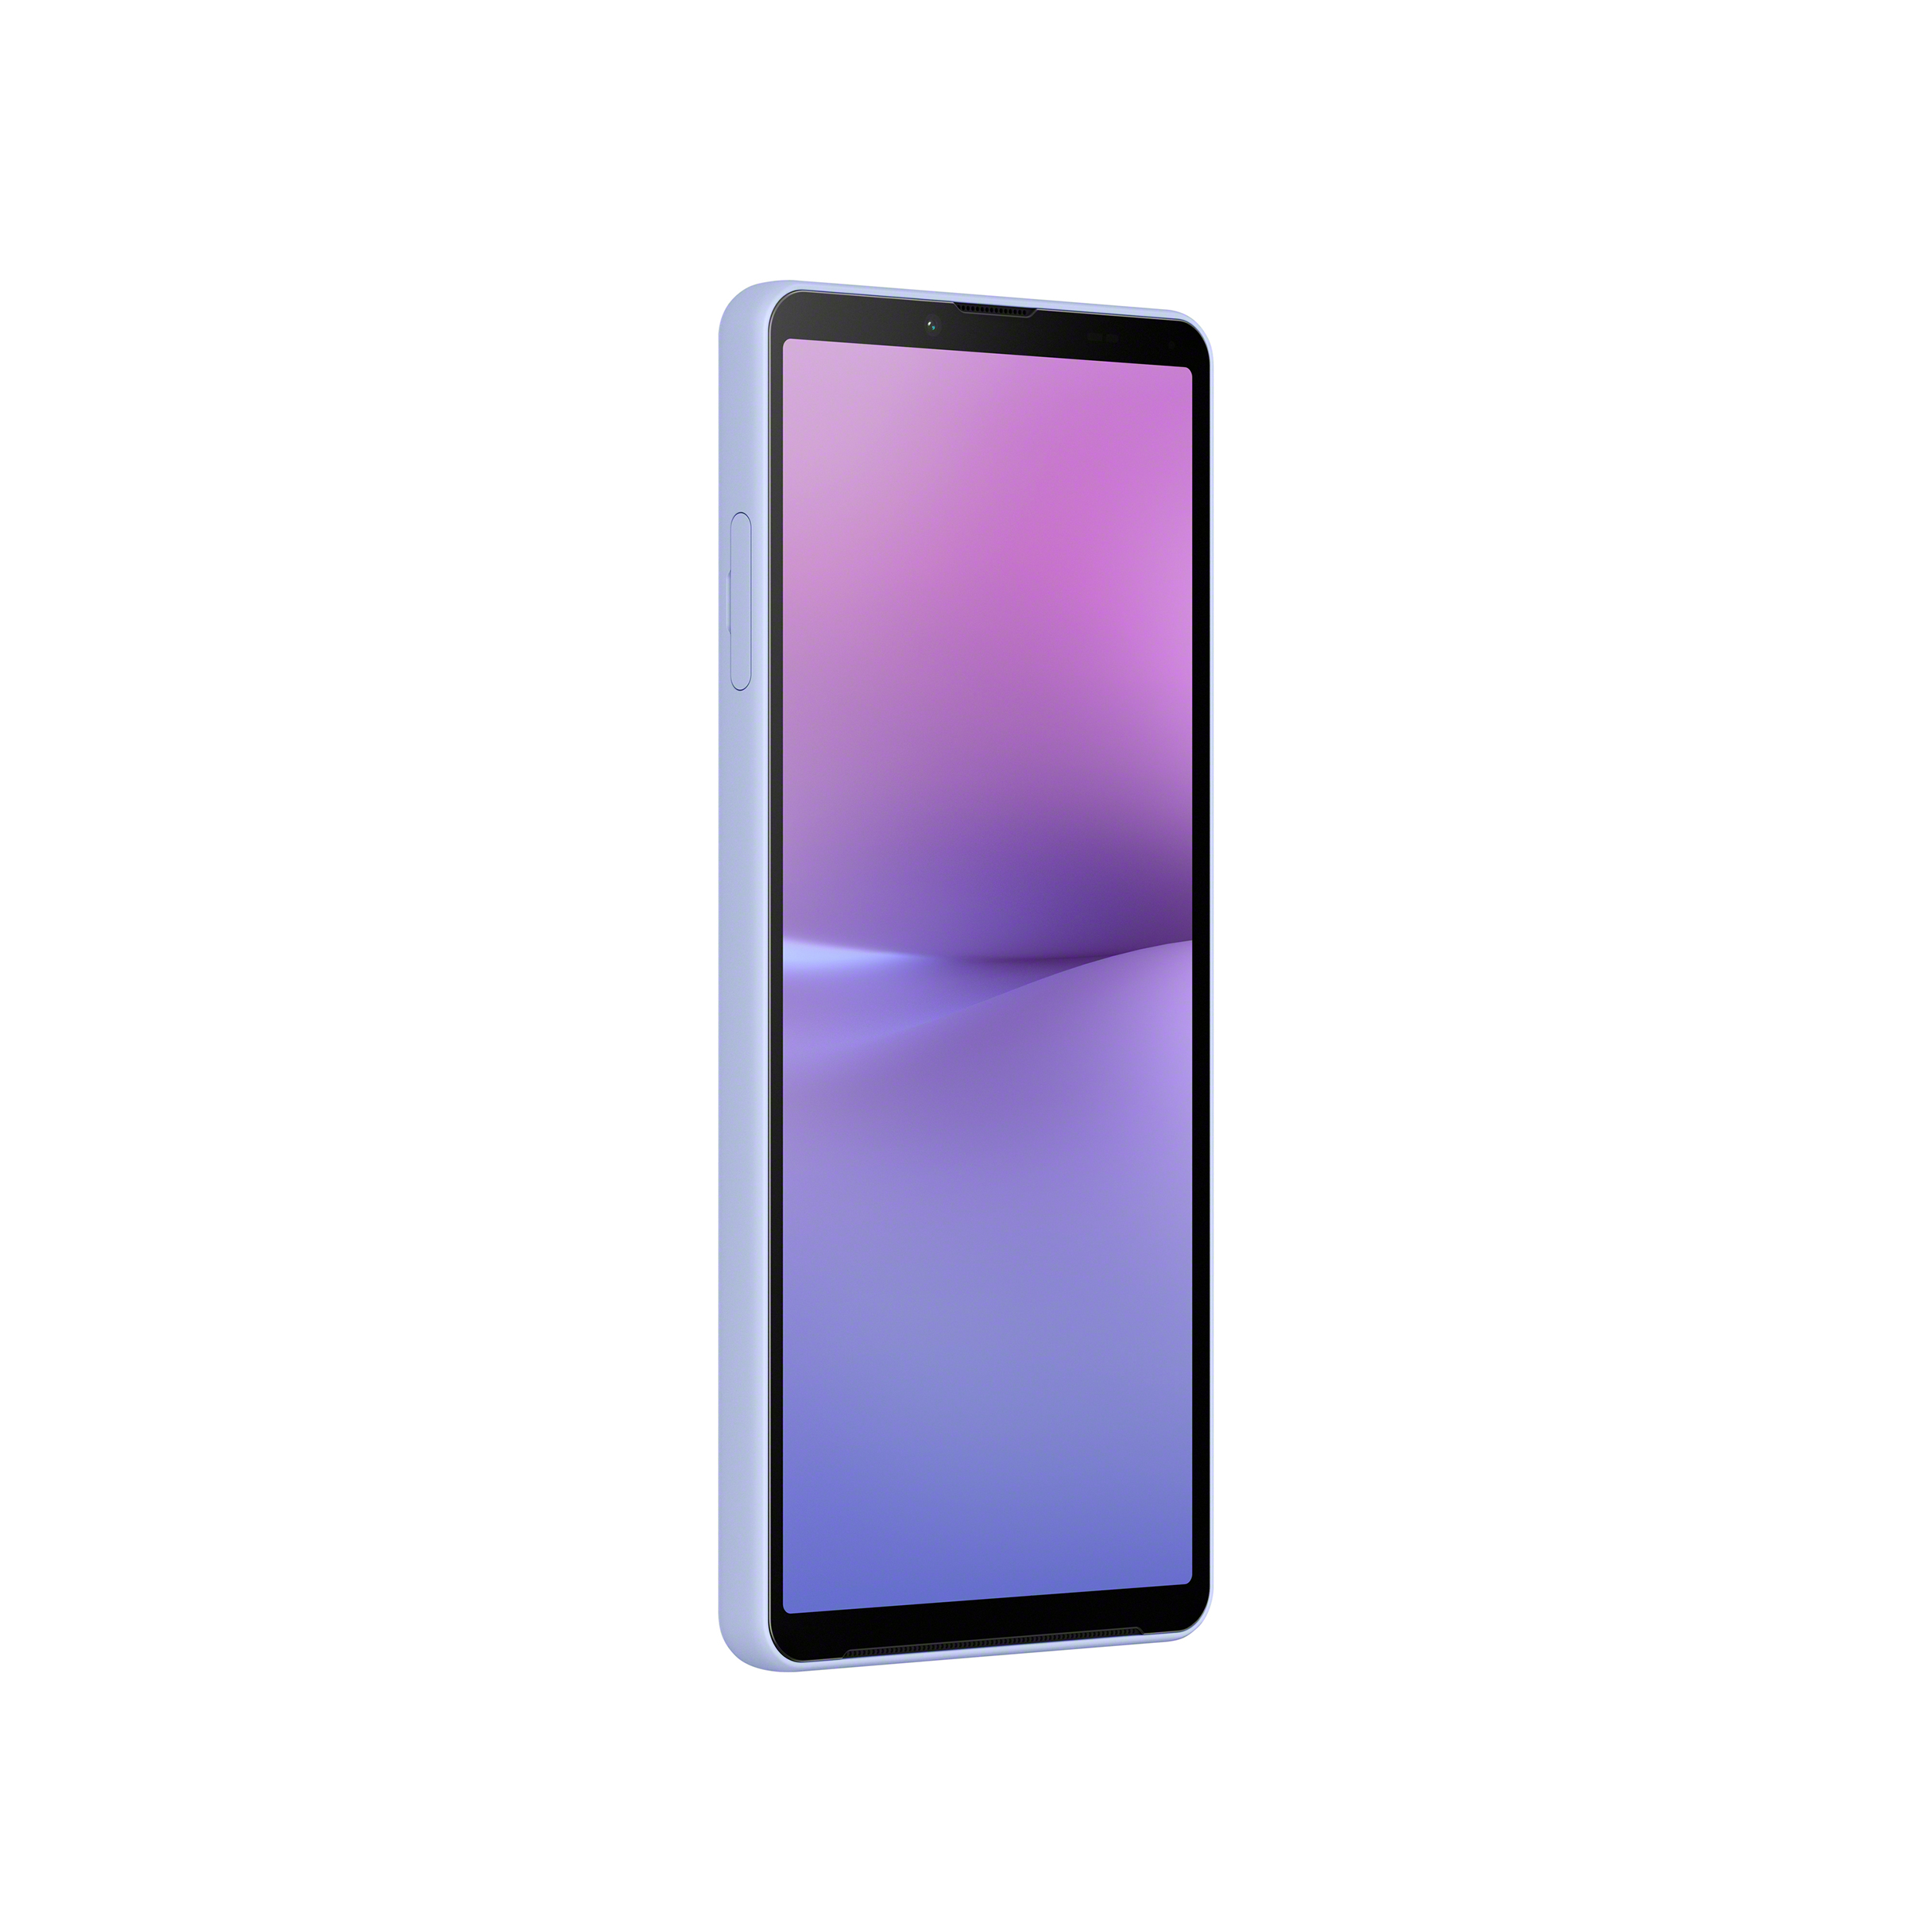 直立薰衣草紫 Xperia 10 V 智慧型手機，正面左斜側圖示